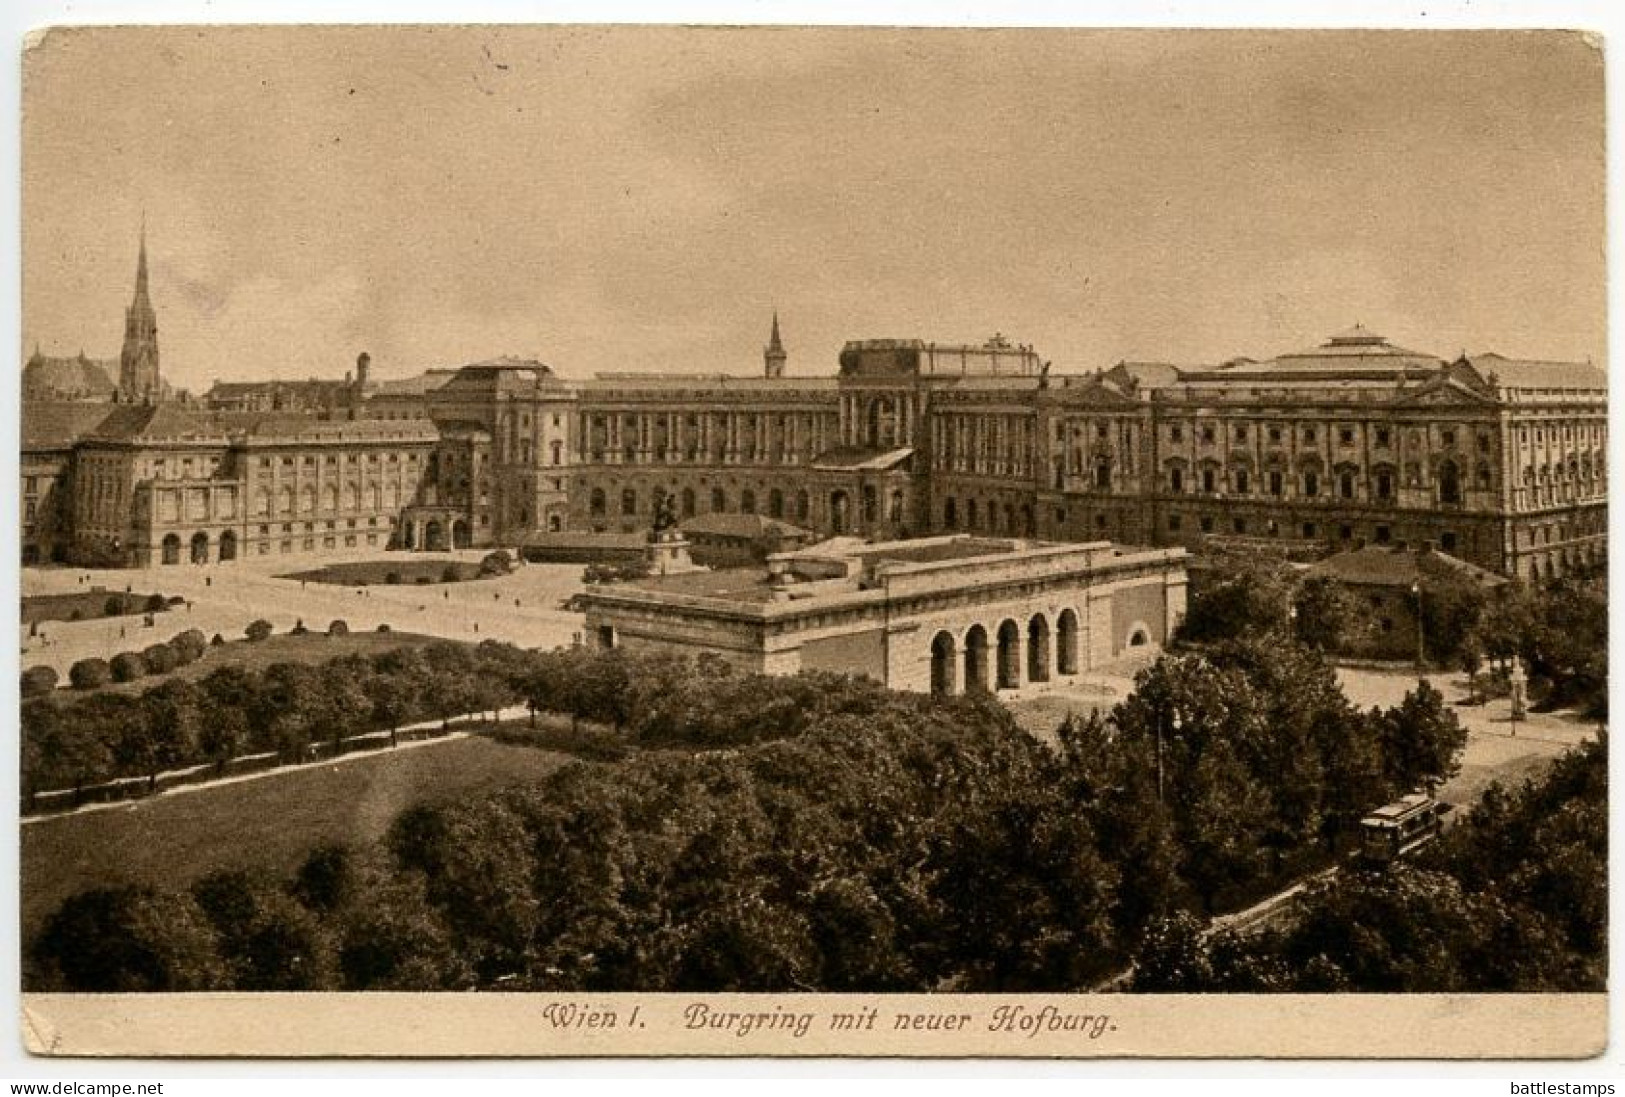 Austria 1920 Postcard - Wien / Vienna, Burgring Mit Neuer Hofburg; Scott 238 - 80h. Coat Of Arms - Ringstrasse